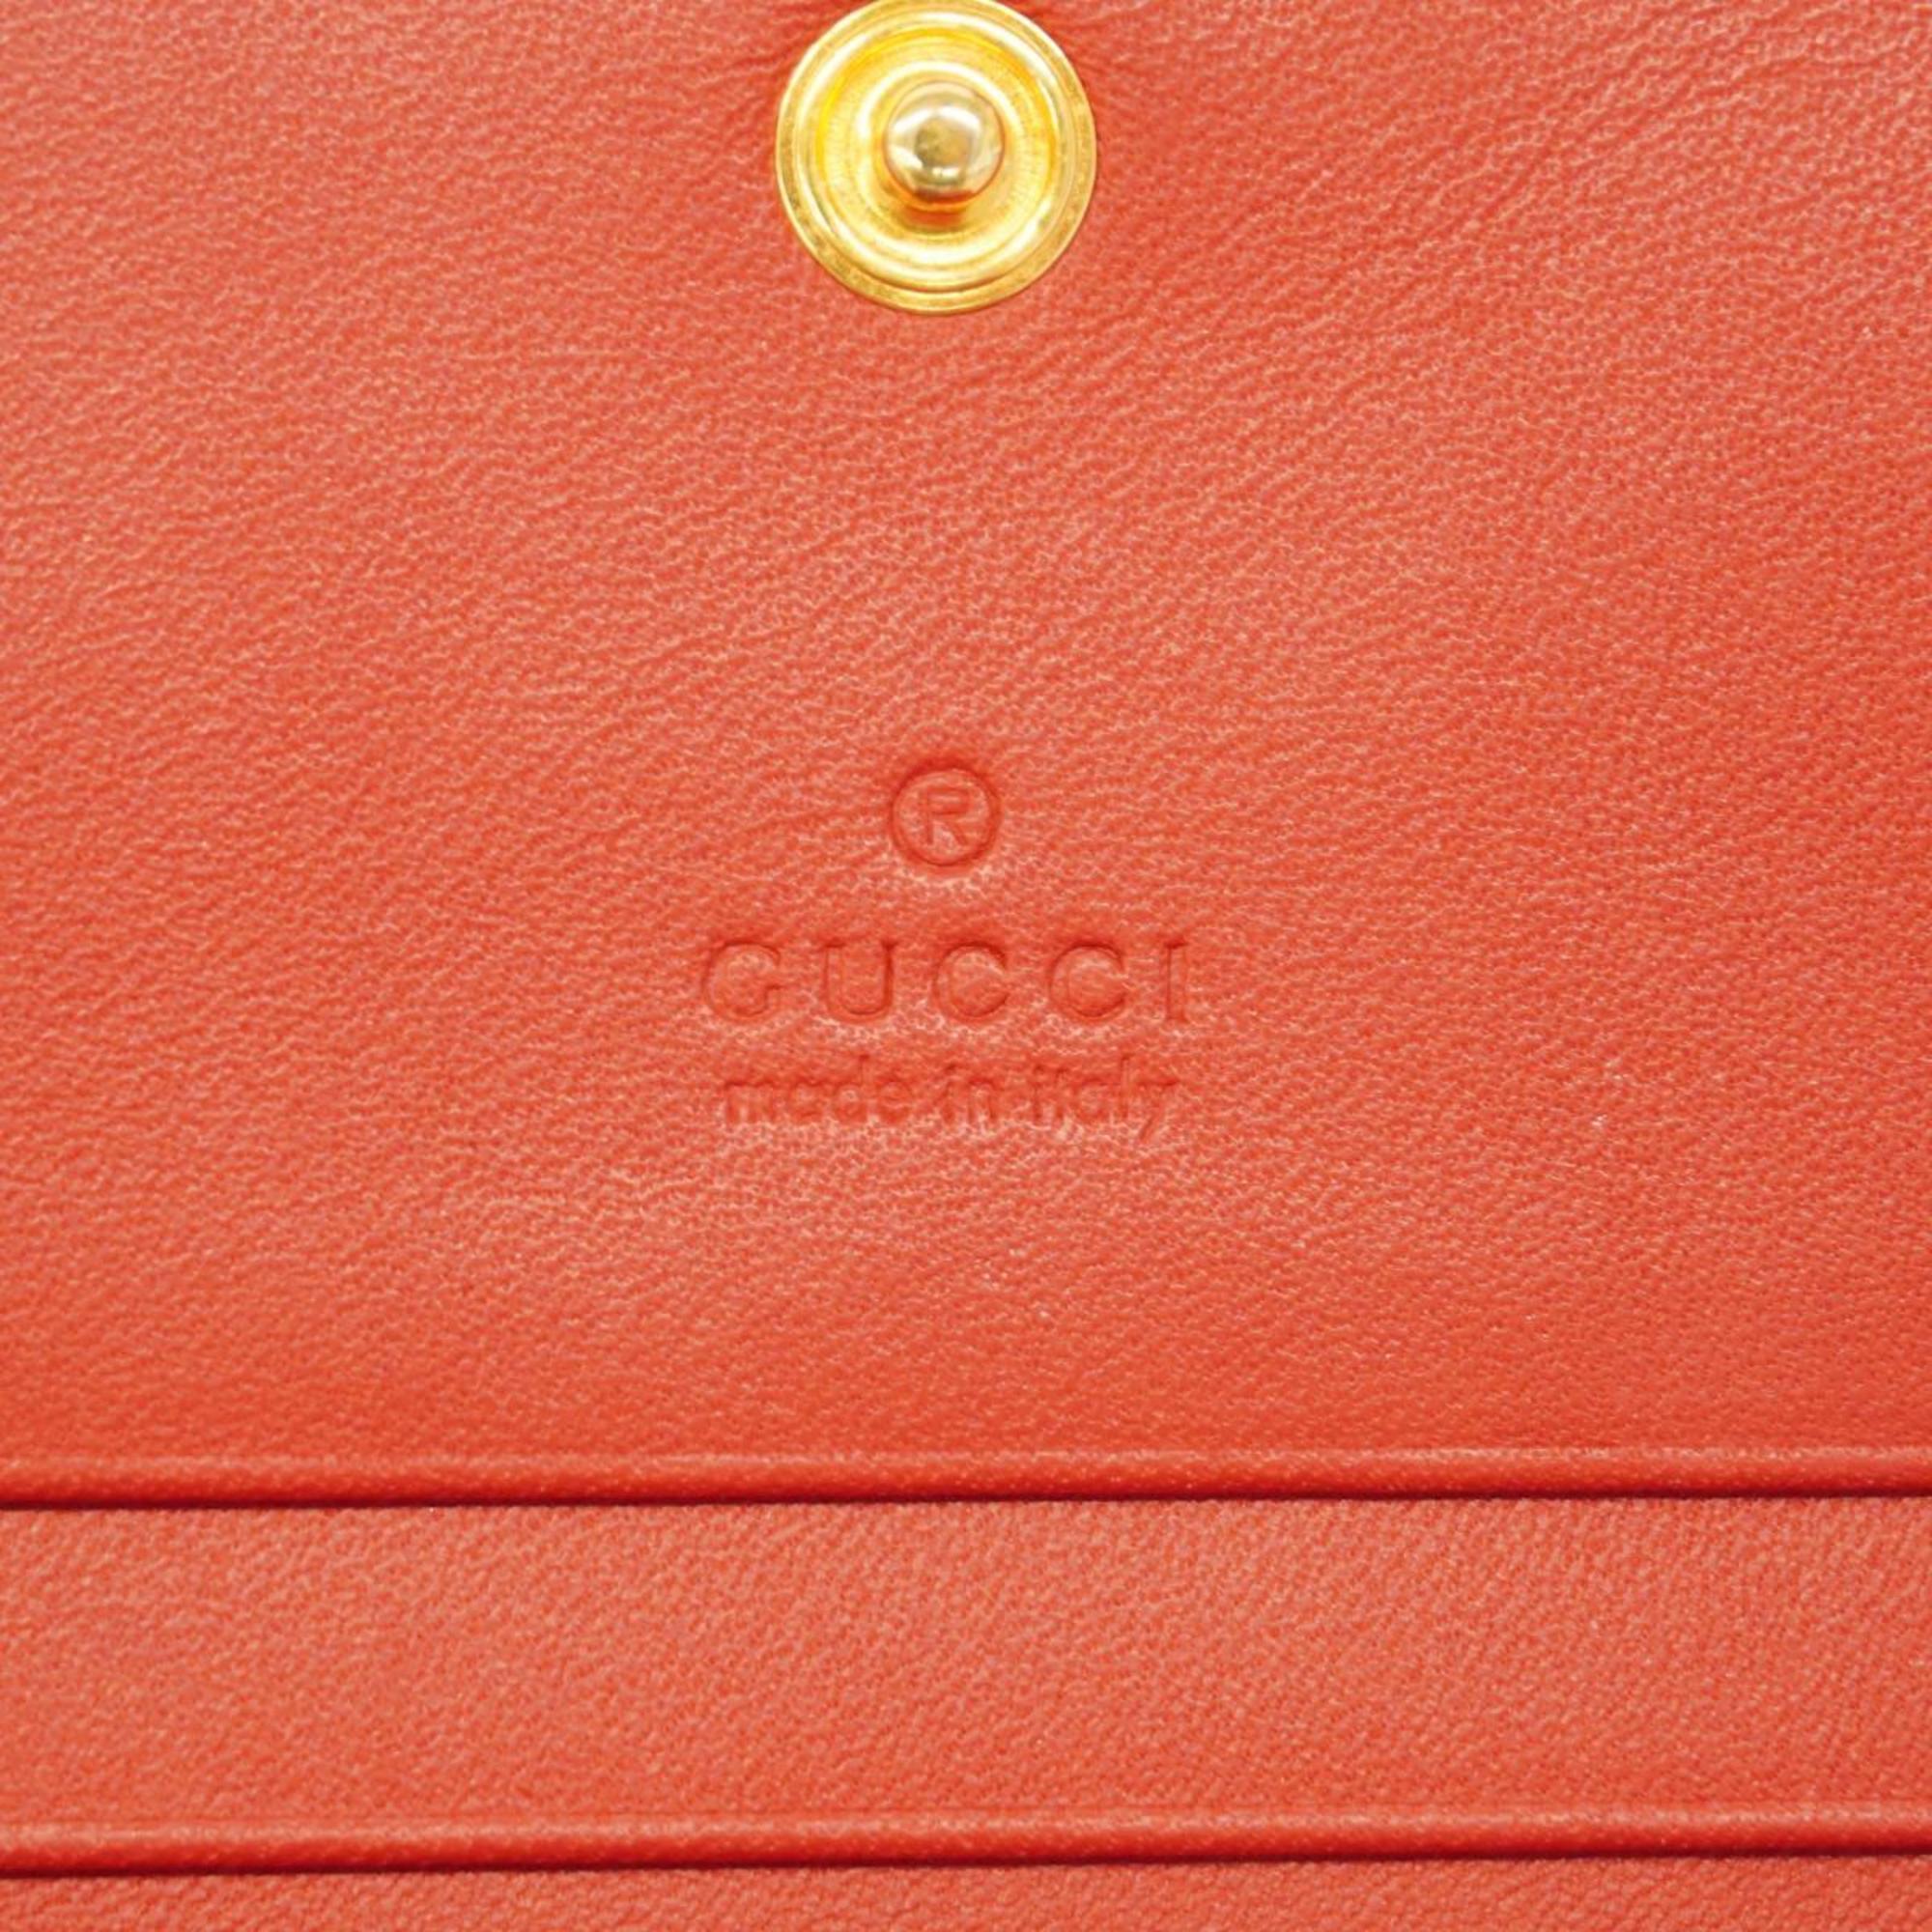 グッチ(Gucci) グッチ 財布 GGスプリーム 499380  レザー ブラウン レッド   レディース